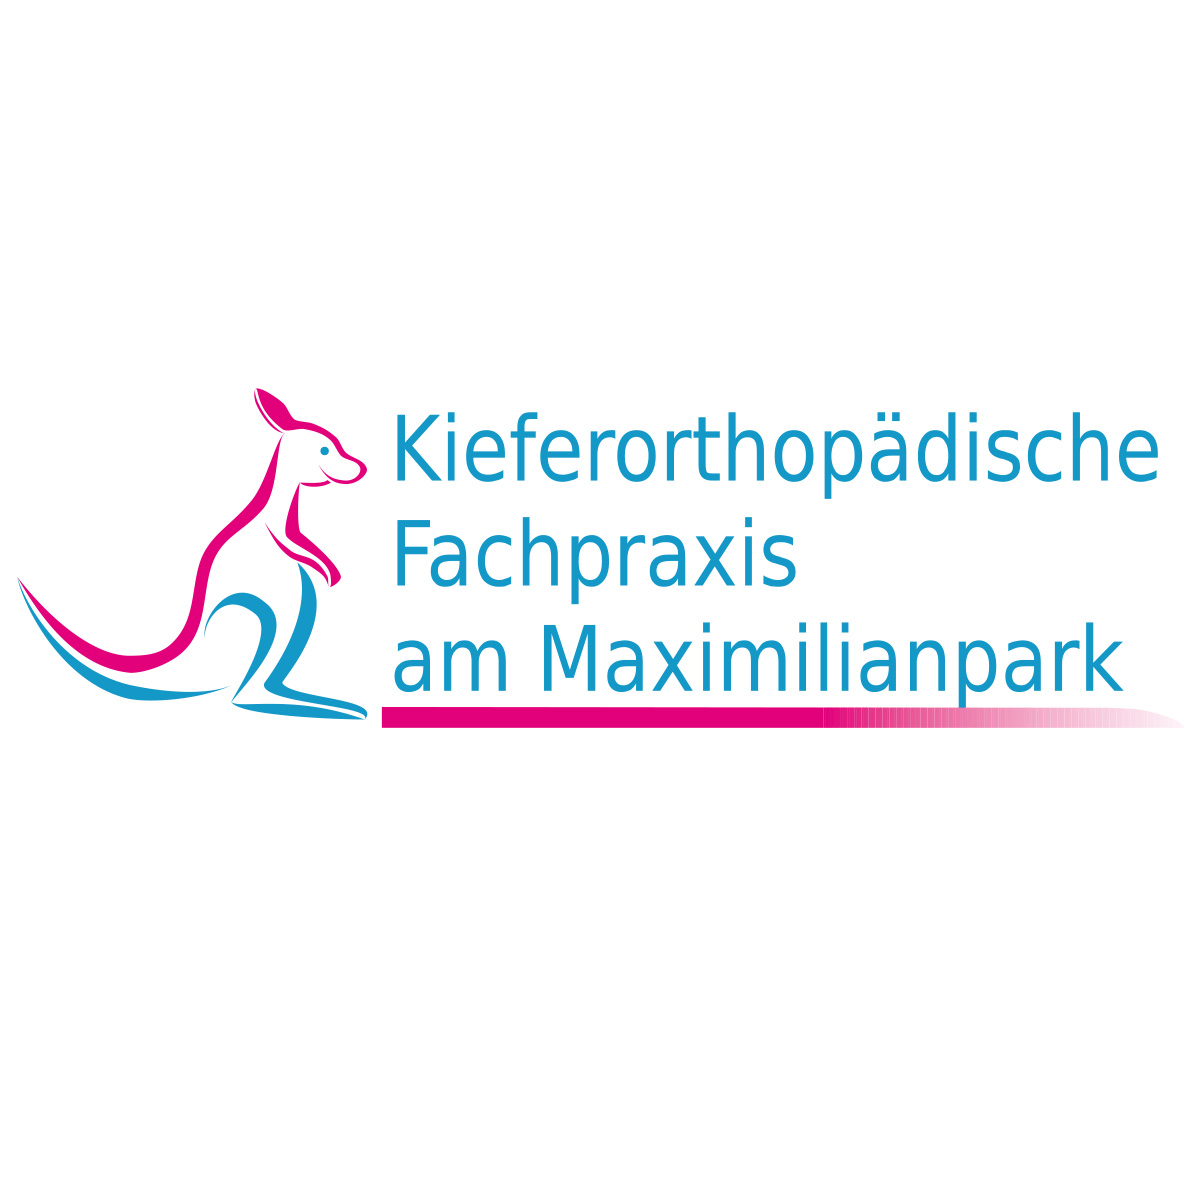 Kieferorthopädische Fachpraxis am Maximilianpark - Dr. Flieger & Dr. Ziebura Logo